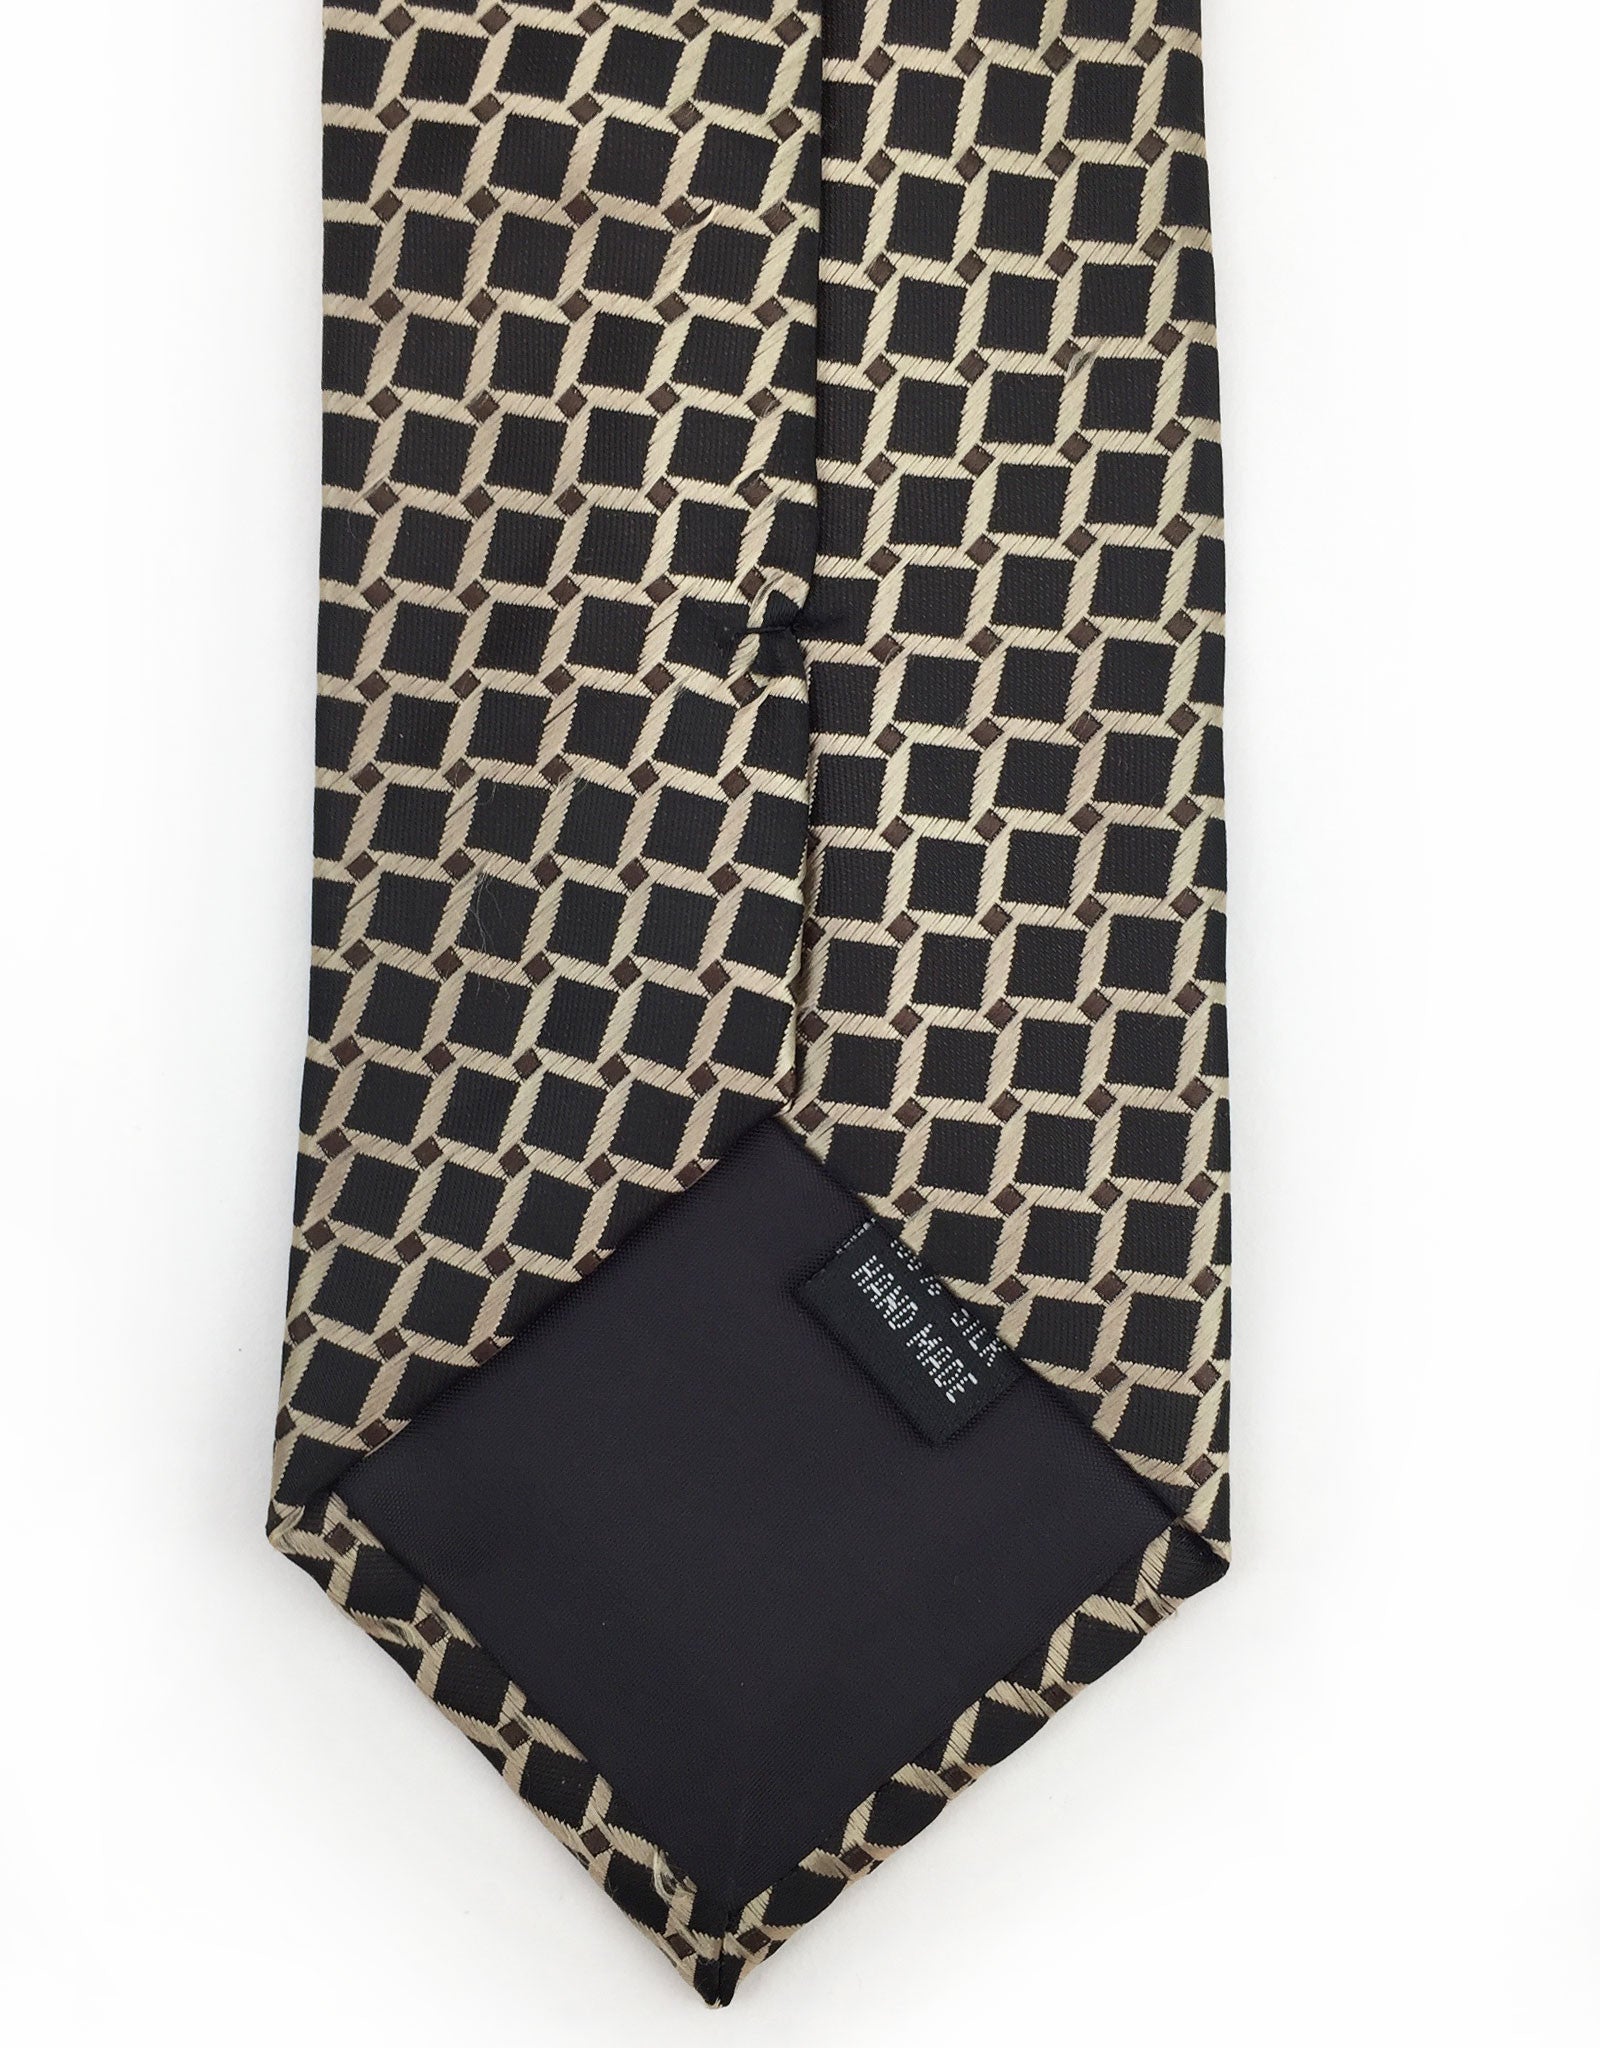 Black and Taupe Grid Tie – GentlemanJoe